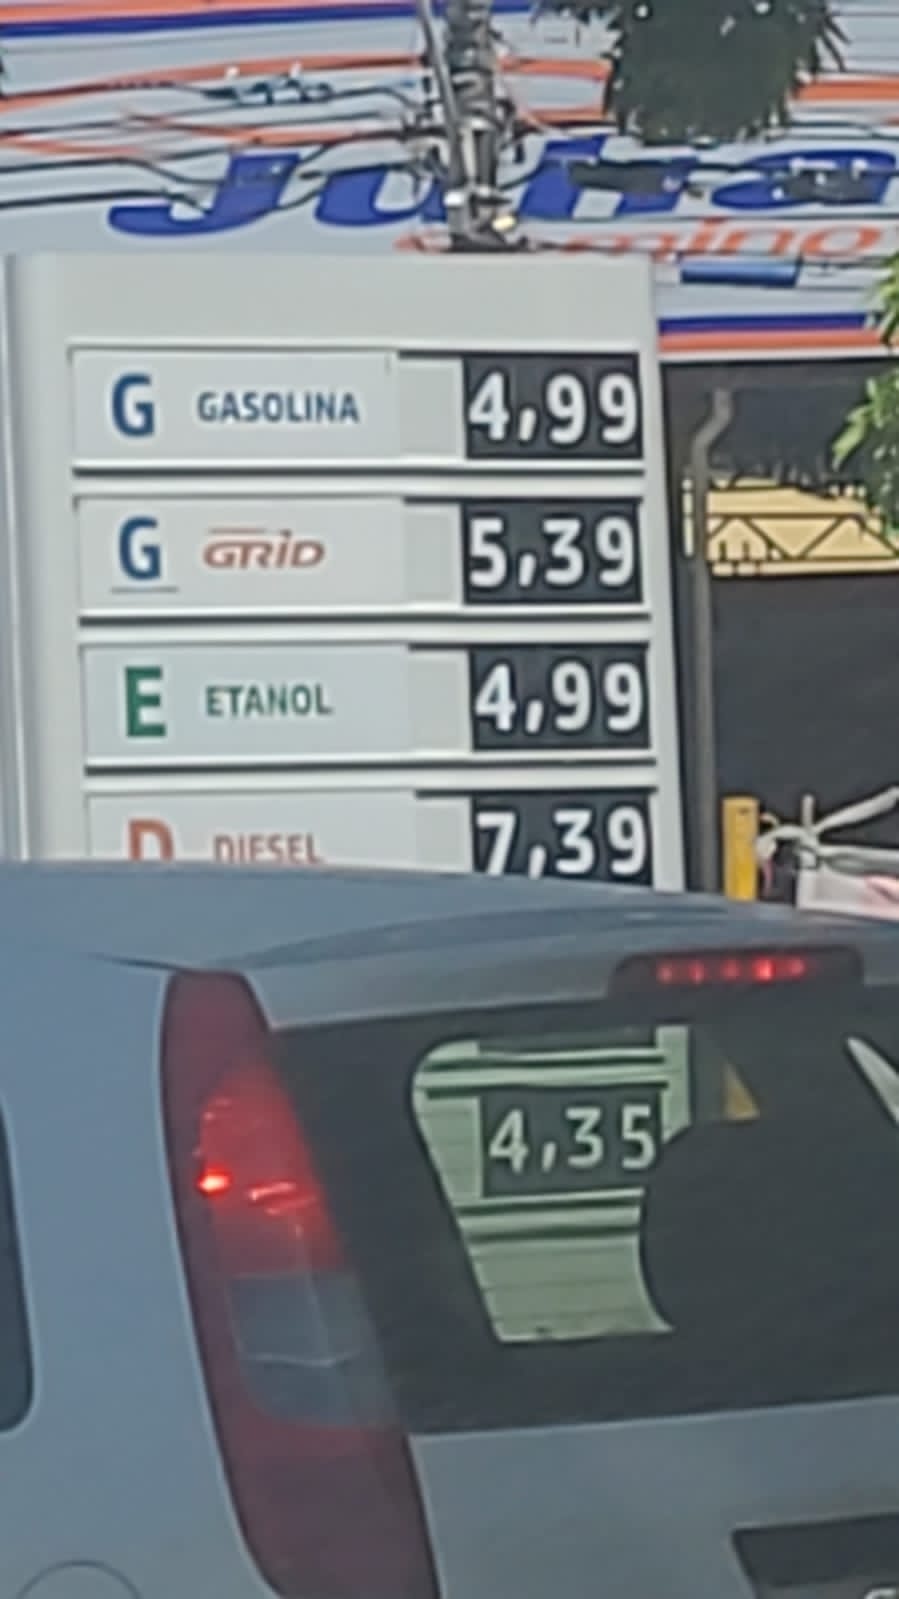 FOTO: Gasolina já é vendida abaixo de R$ 5 em Natal - Blog do BG